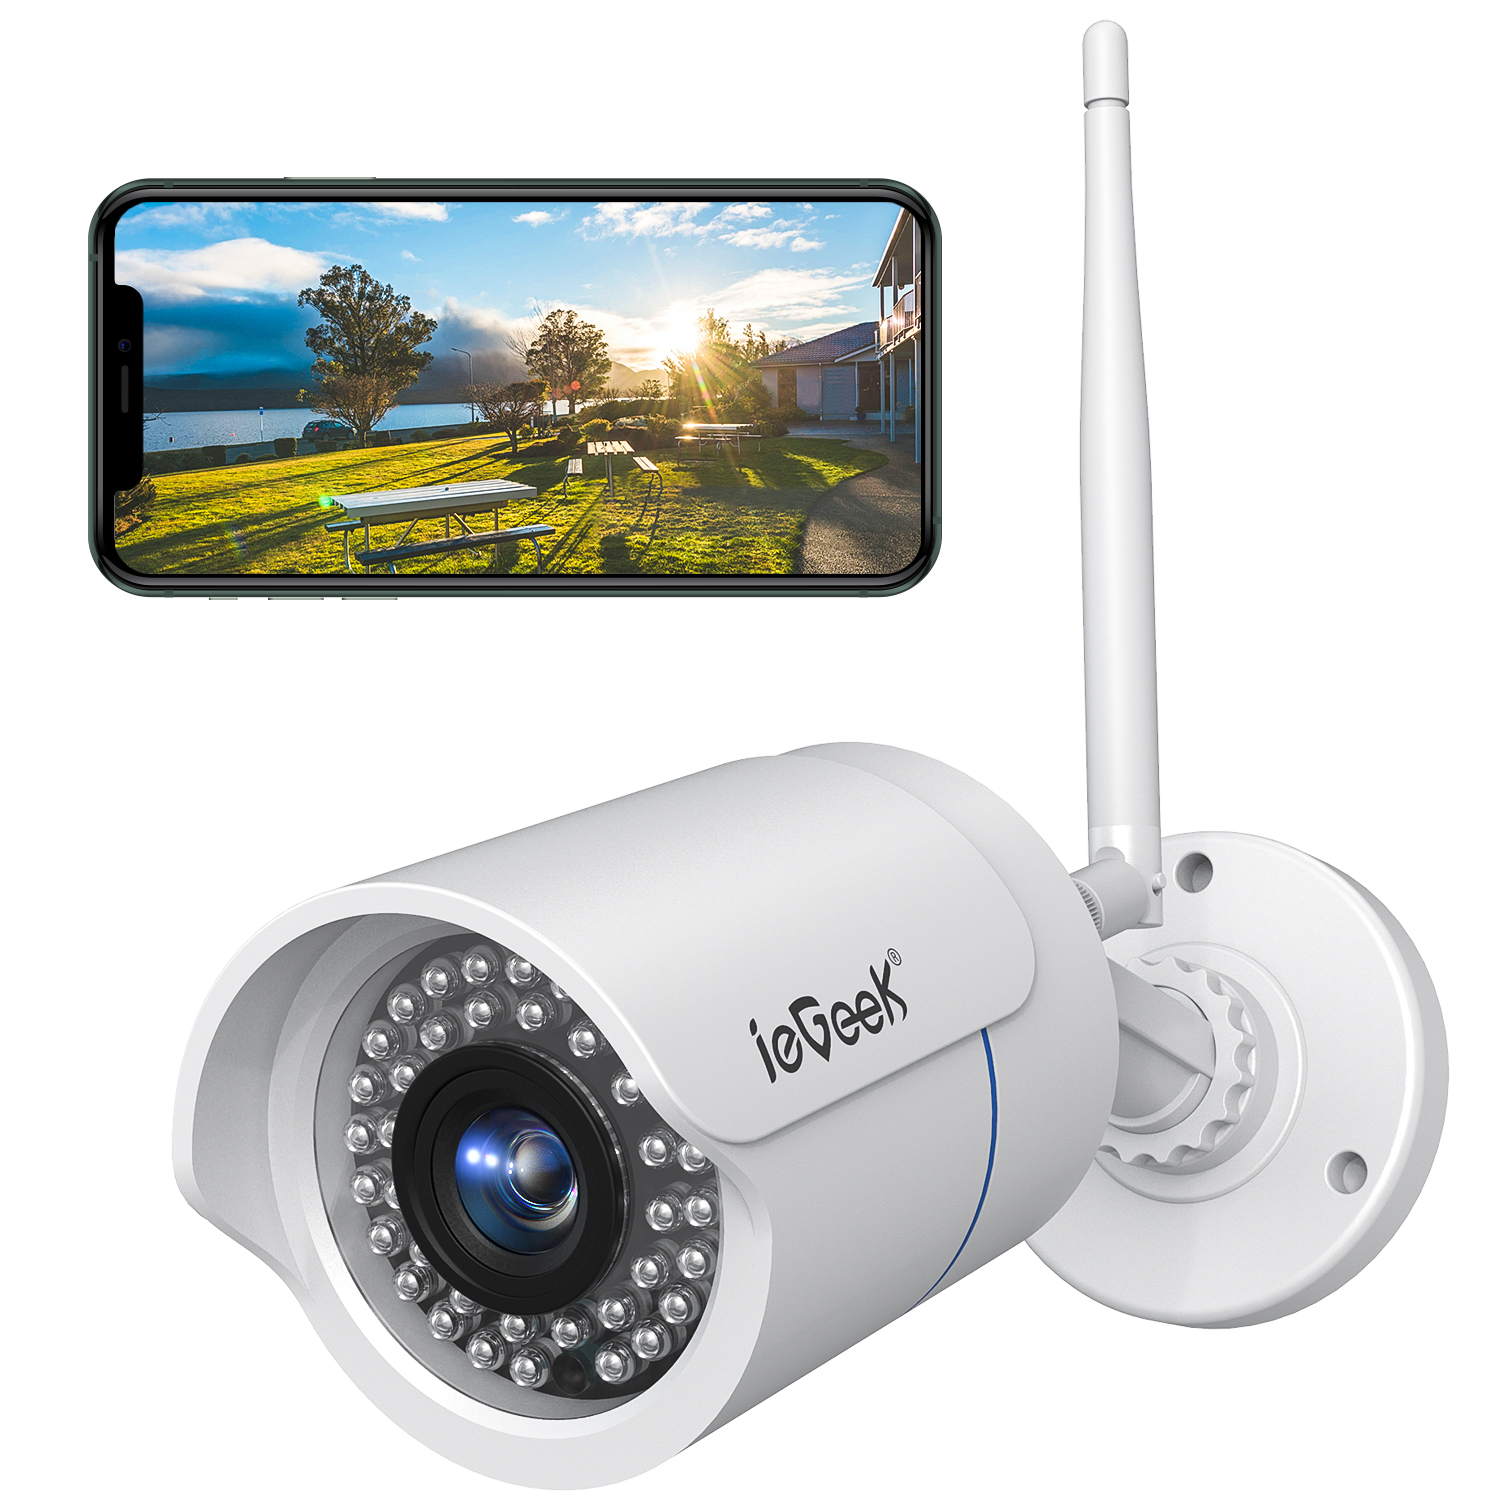 1080P HD IP Netzwerk Camera Außen Wlan WIFI Überwachungskamera Funk CCTV Webcam